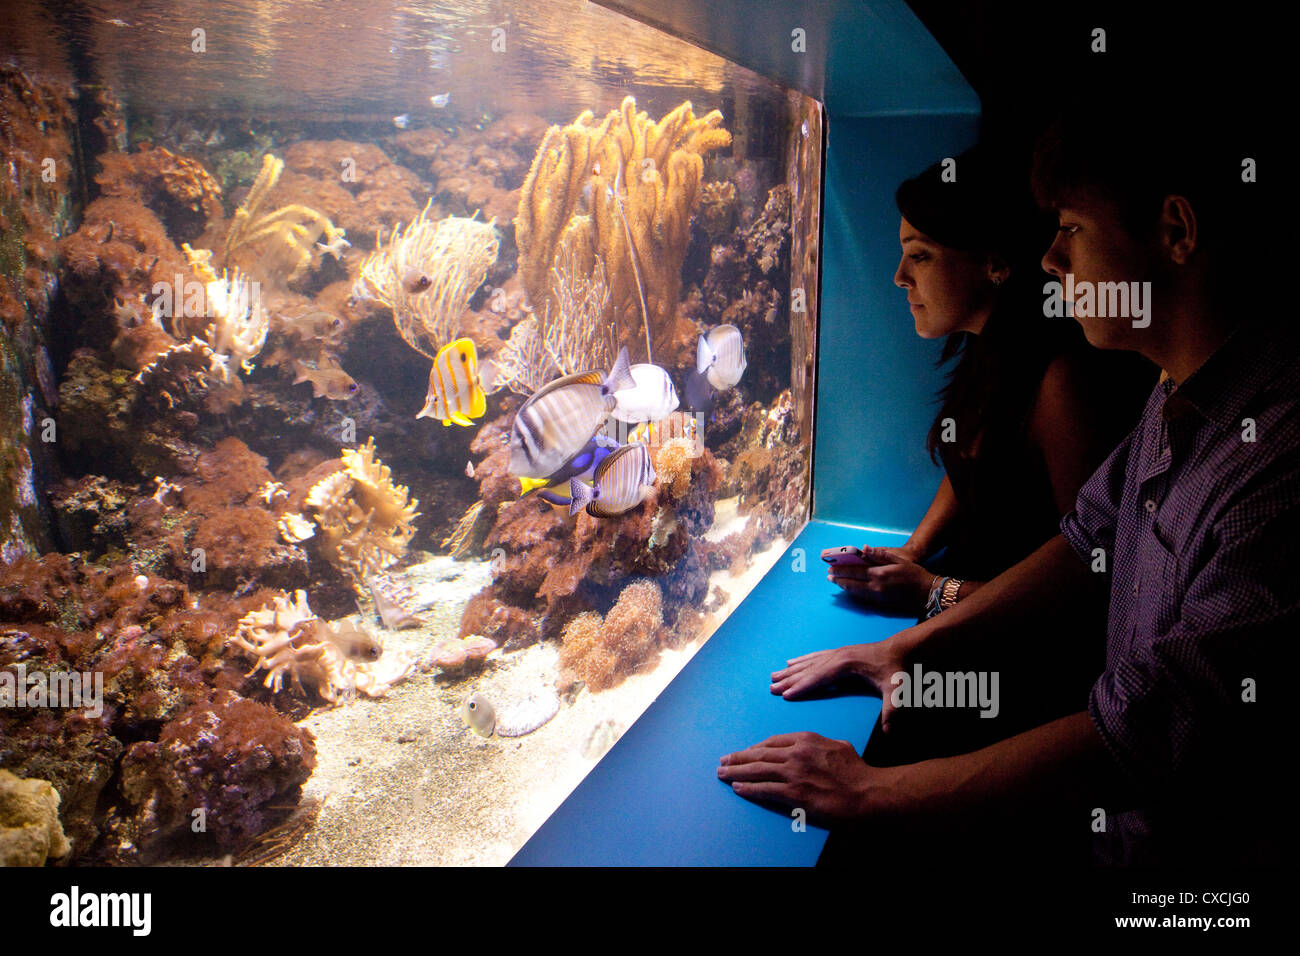 Los adolescentes mirando a los peces, la Vida del Mar el Acuario de Londres, Londres, Reino Unido Foto de stock